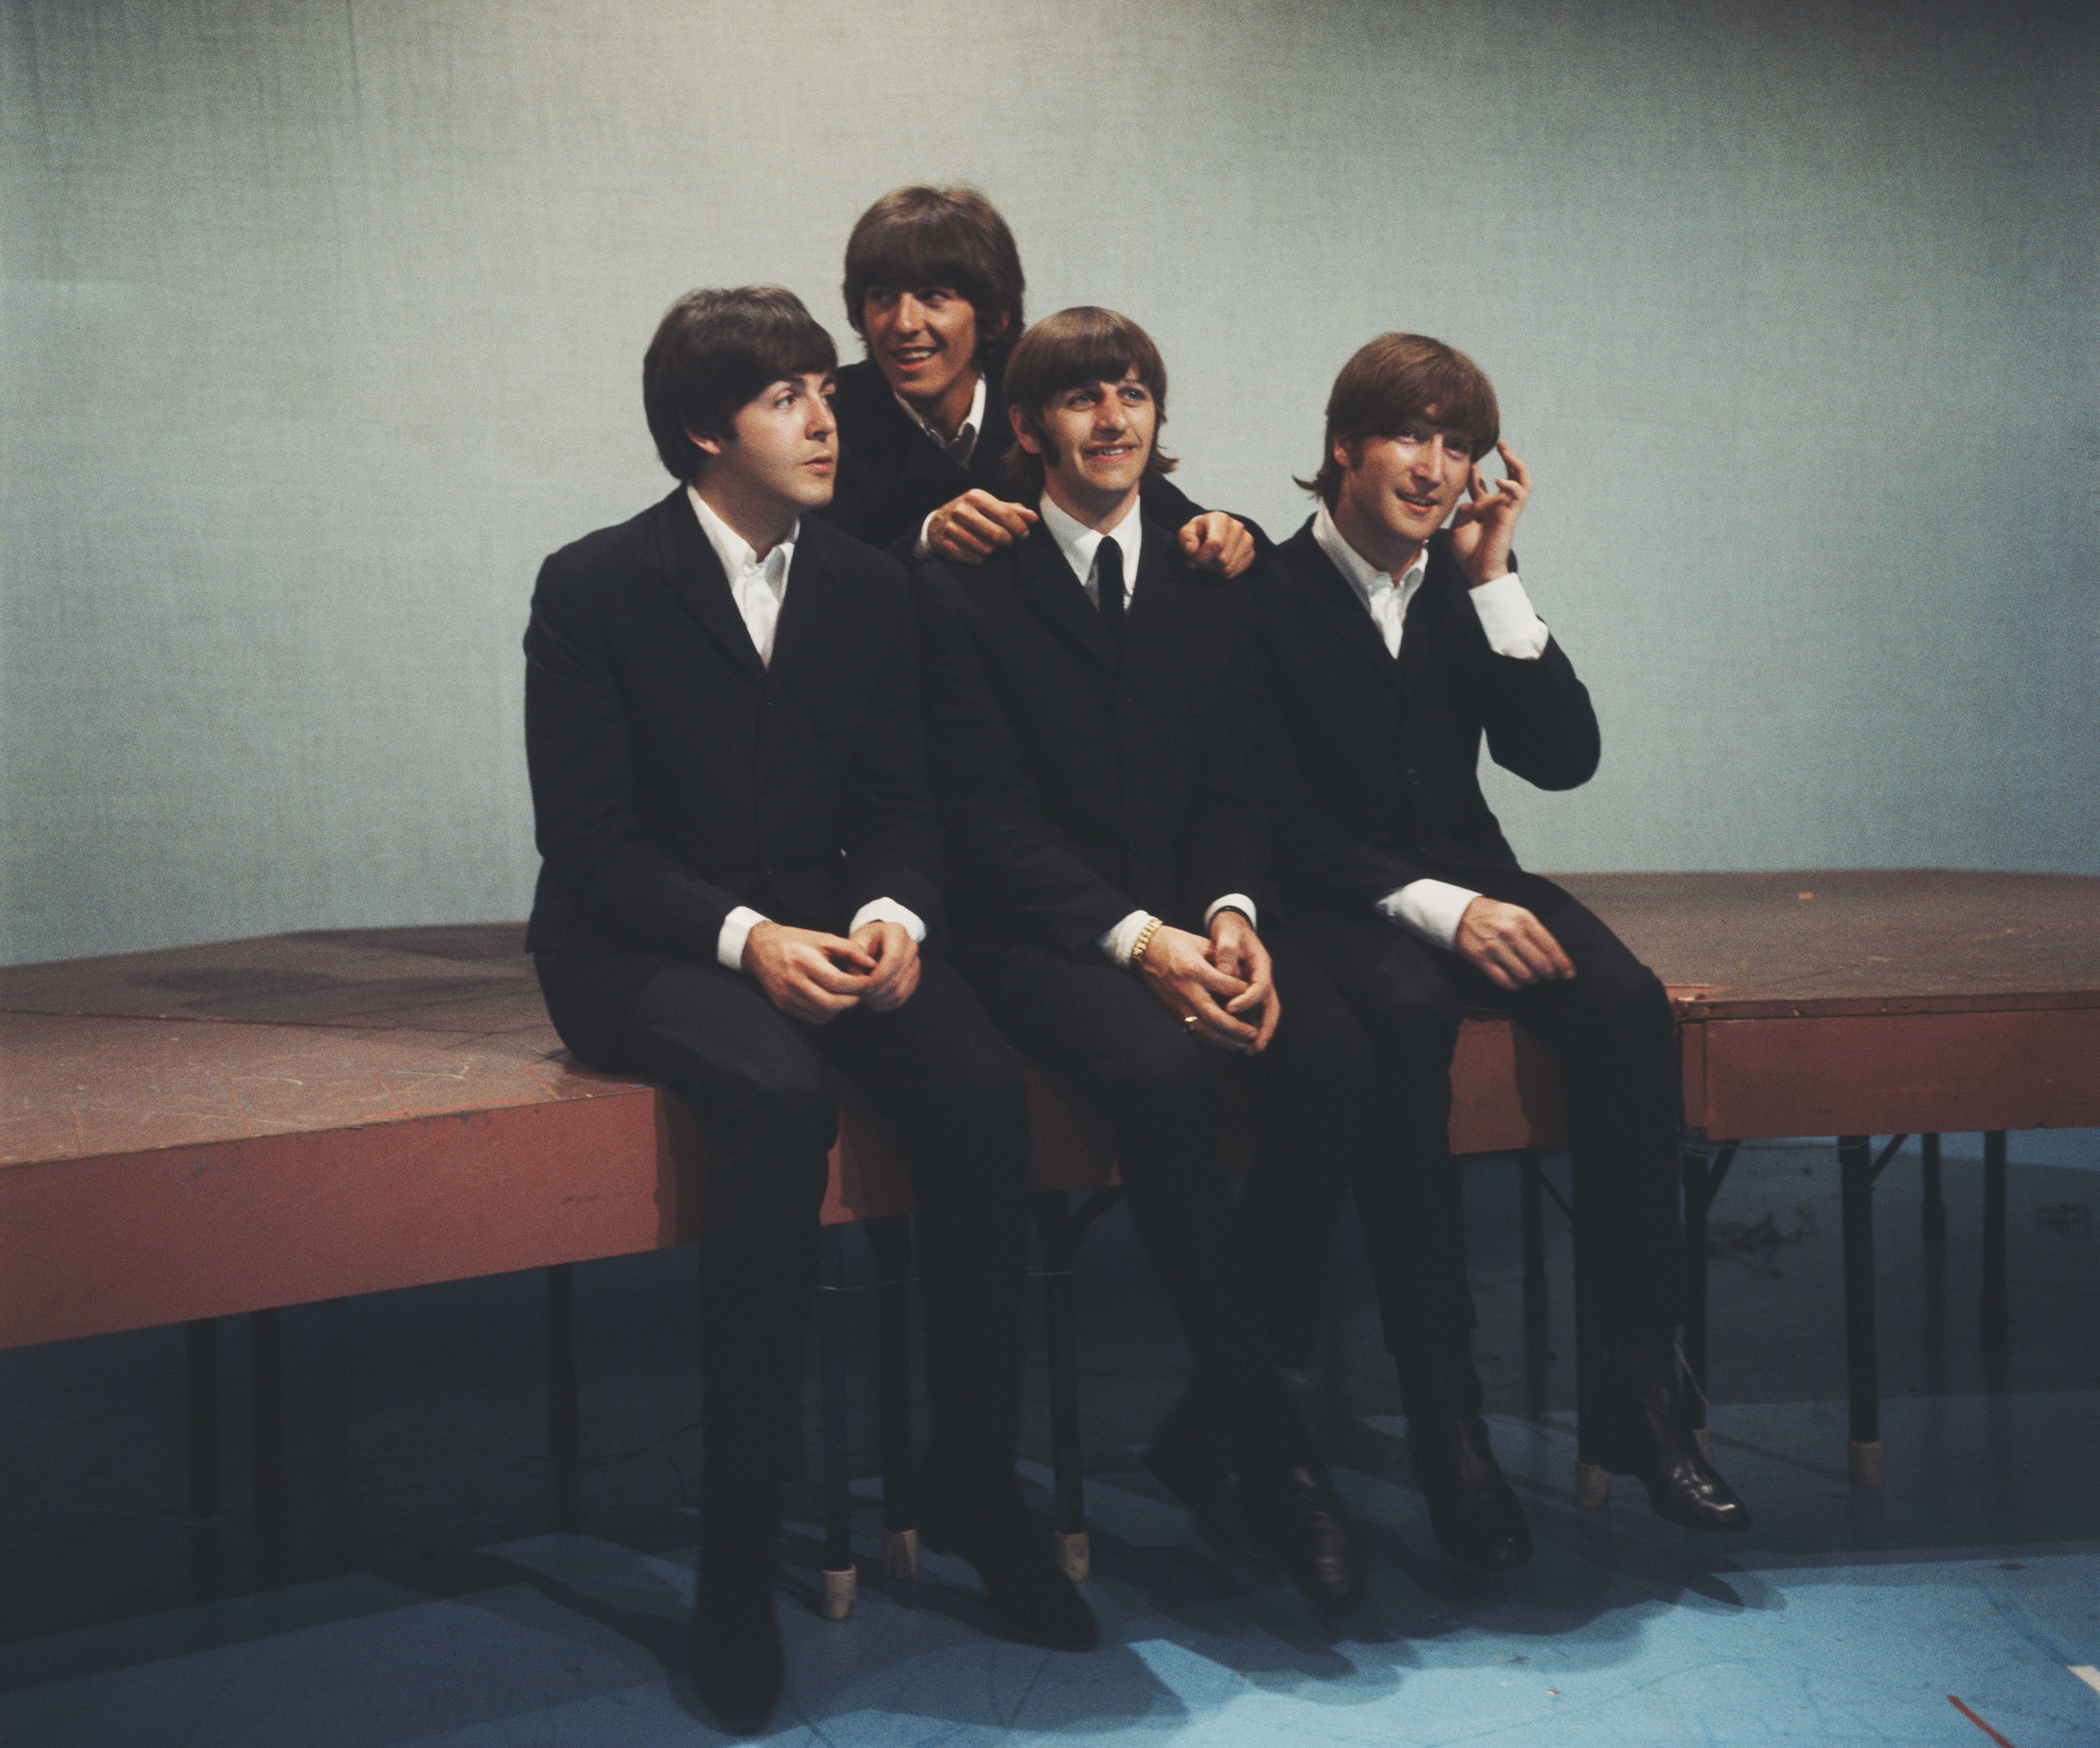 Les quatre acteurs pour incarner les Beatles auraient été trouvés